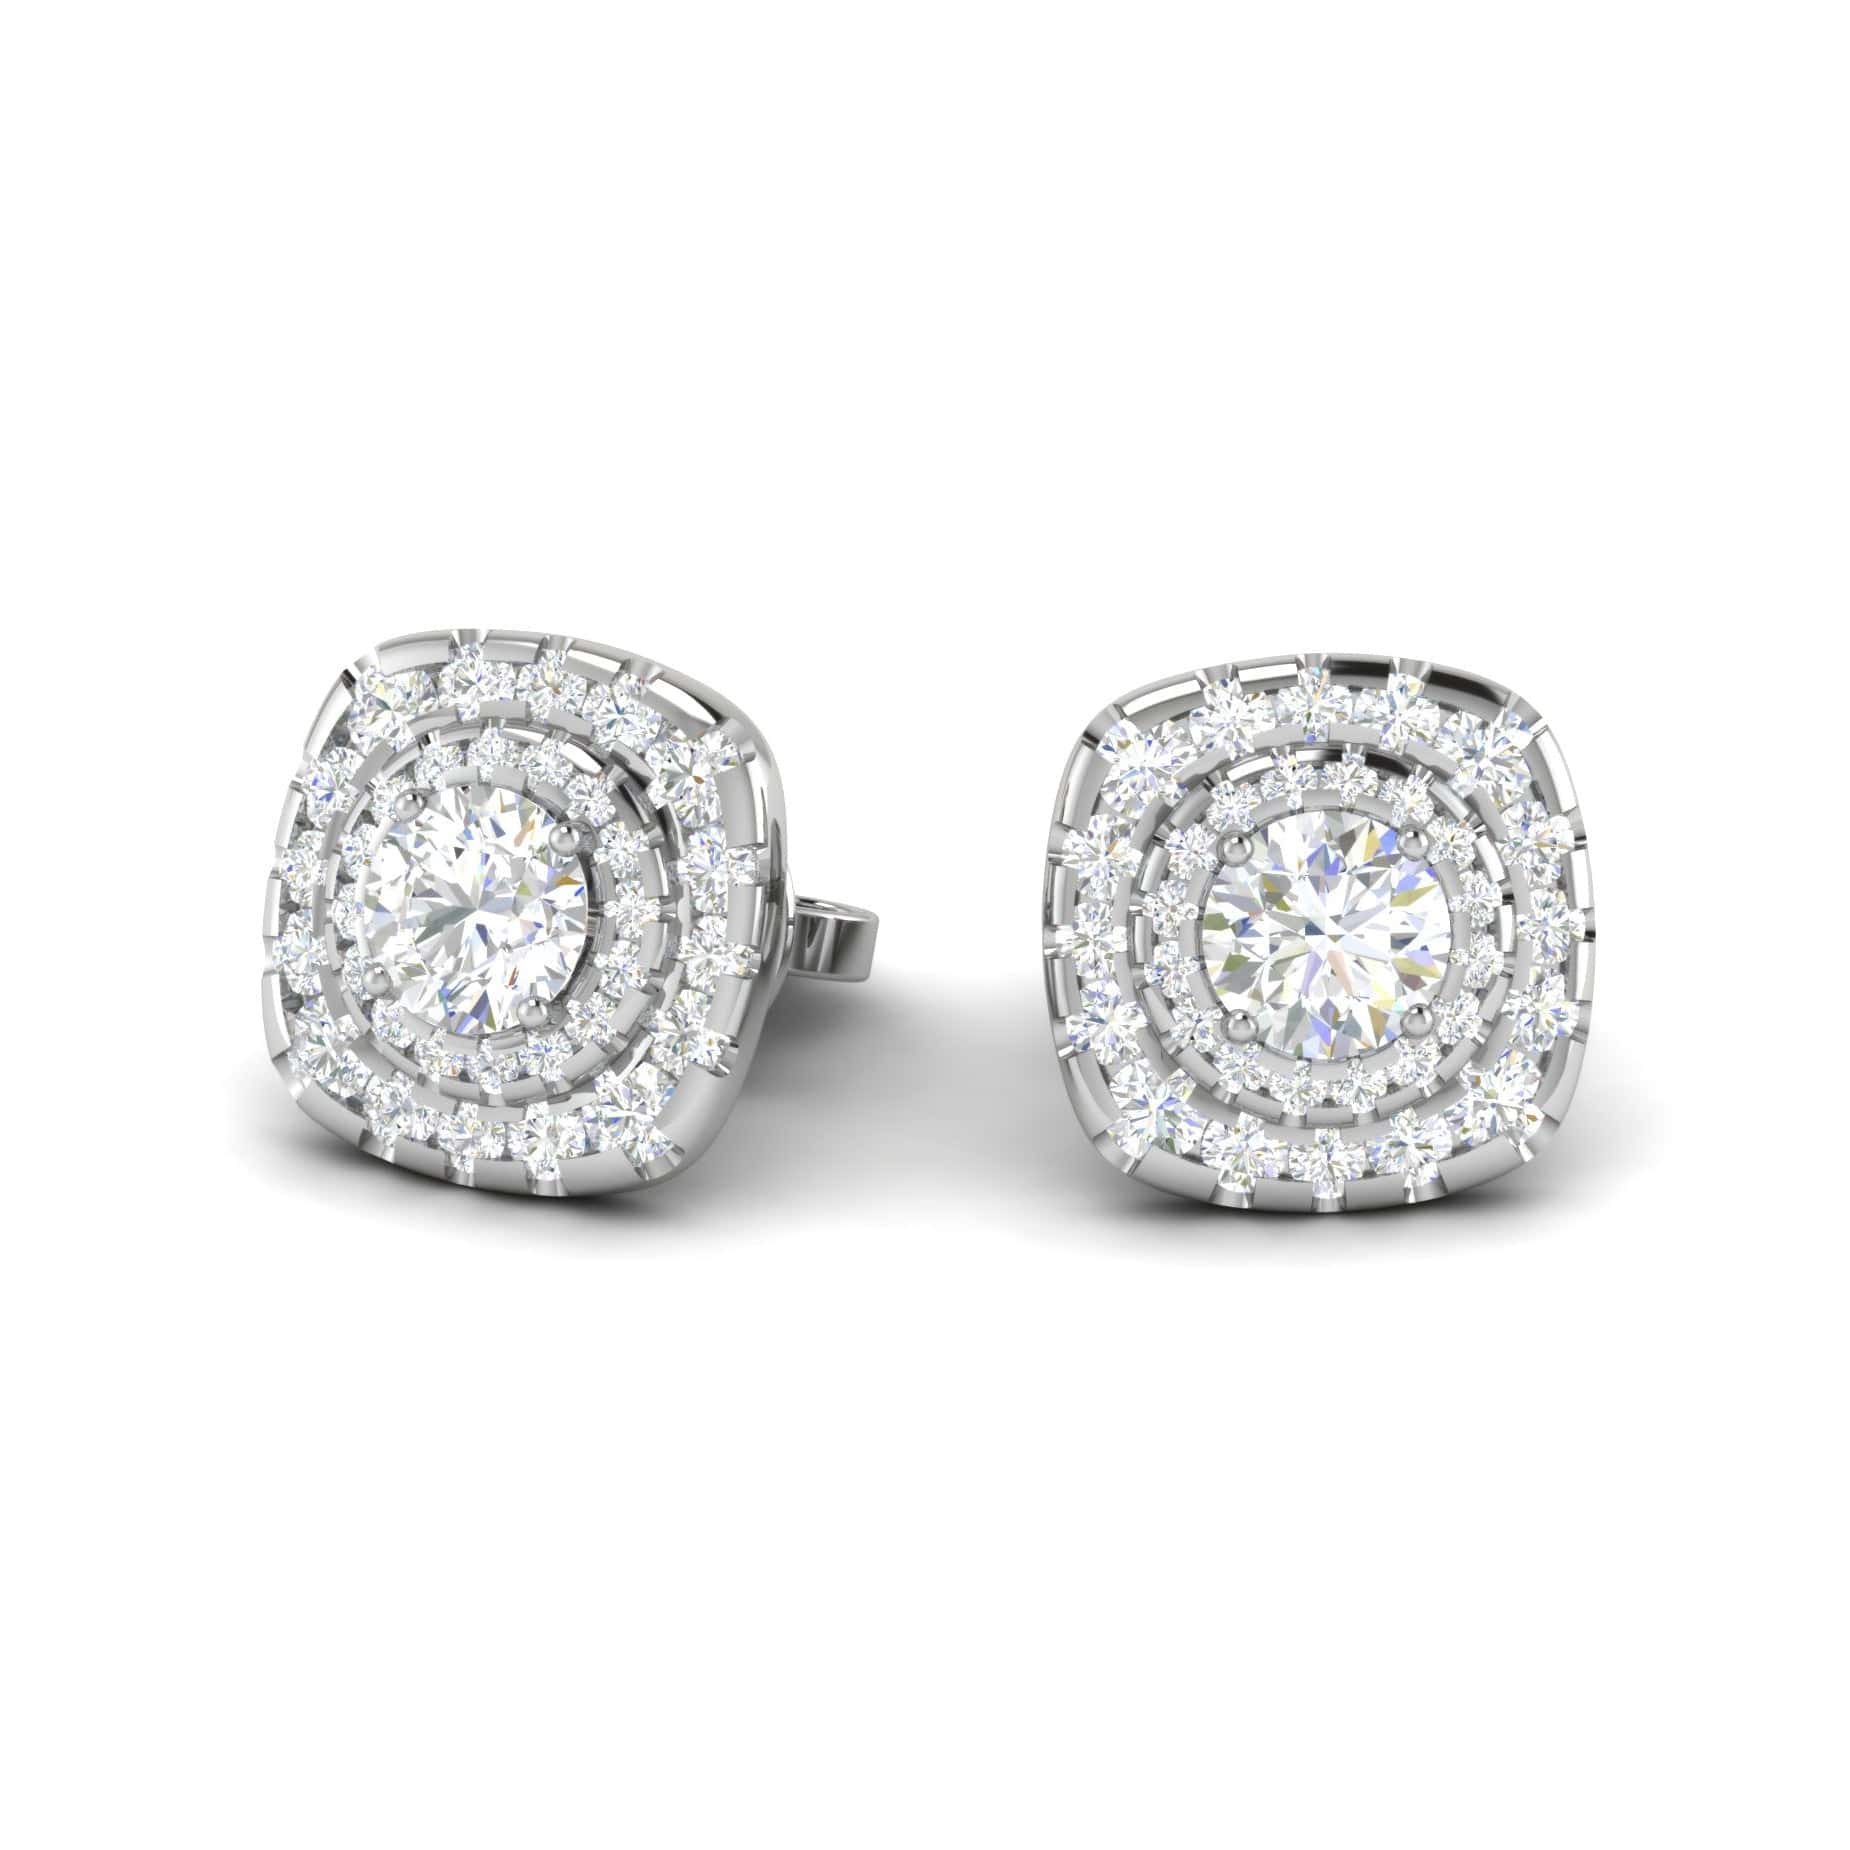 Platinum Solitaire Diamond Earrings for Women JL PT SE RD 107